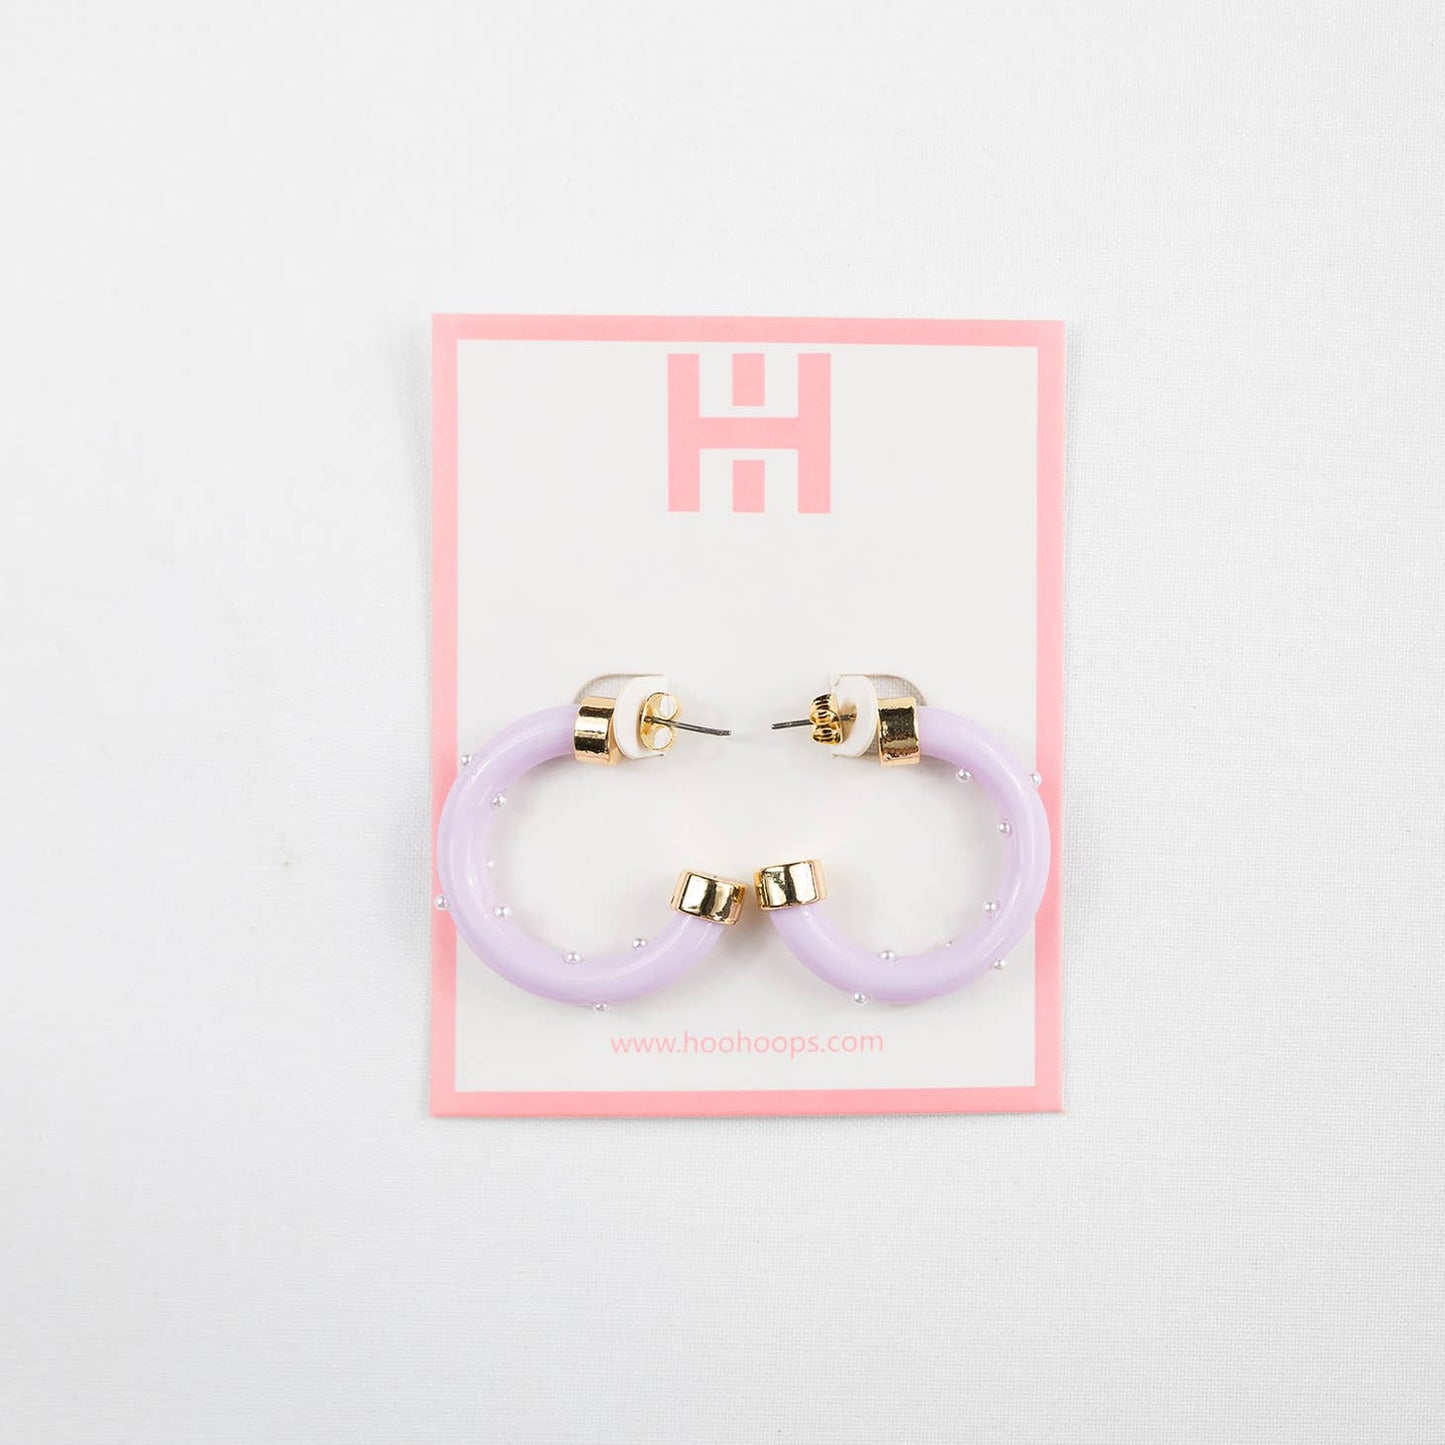 Hoo Hoops: Minis with Pearls